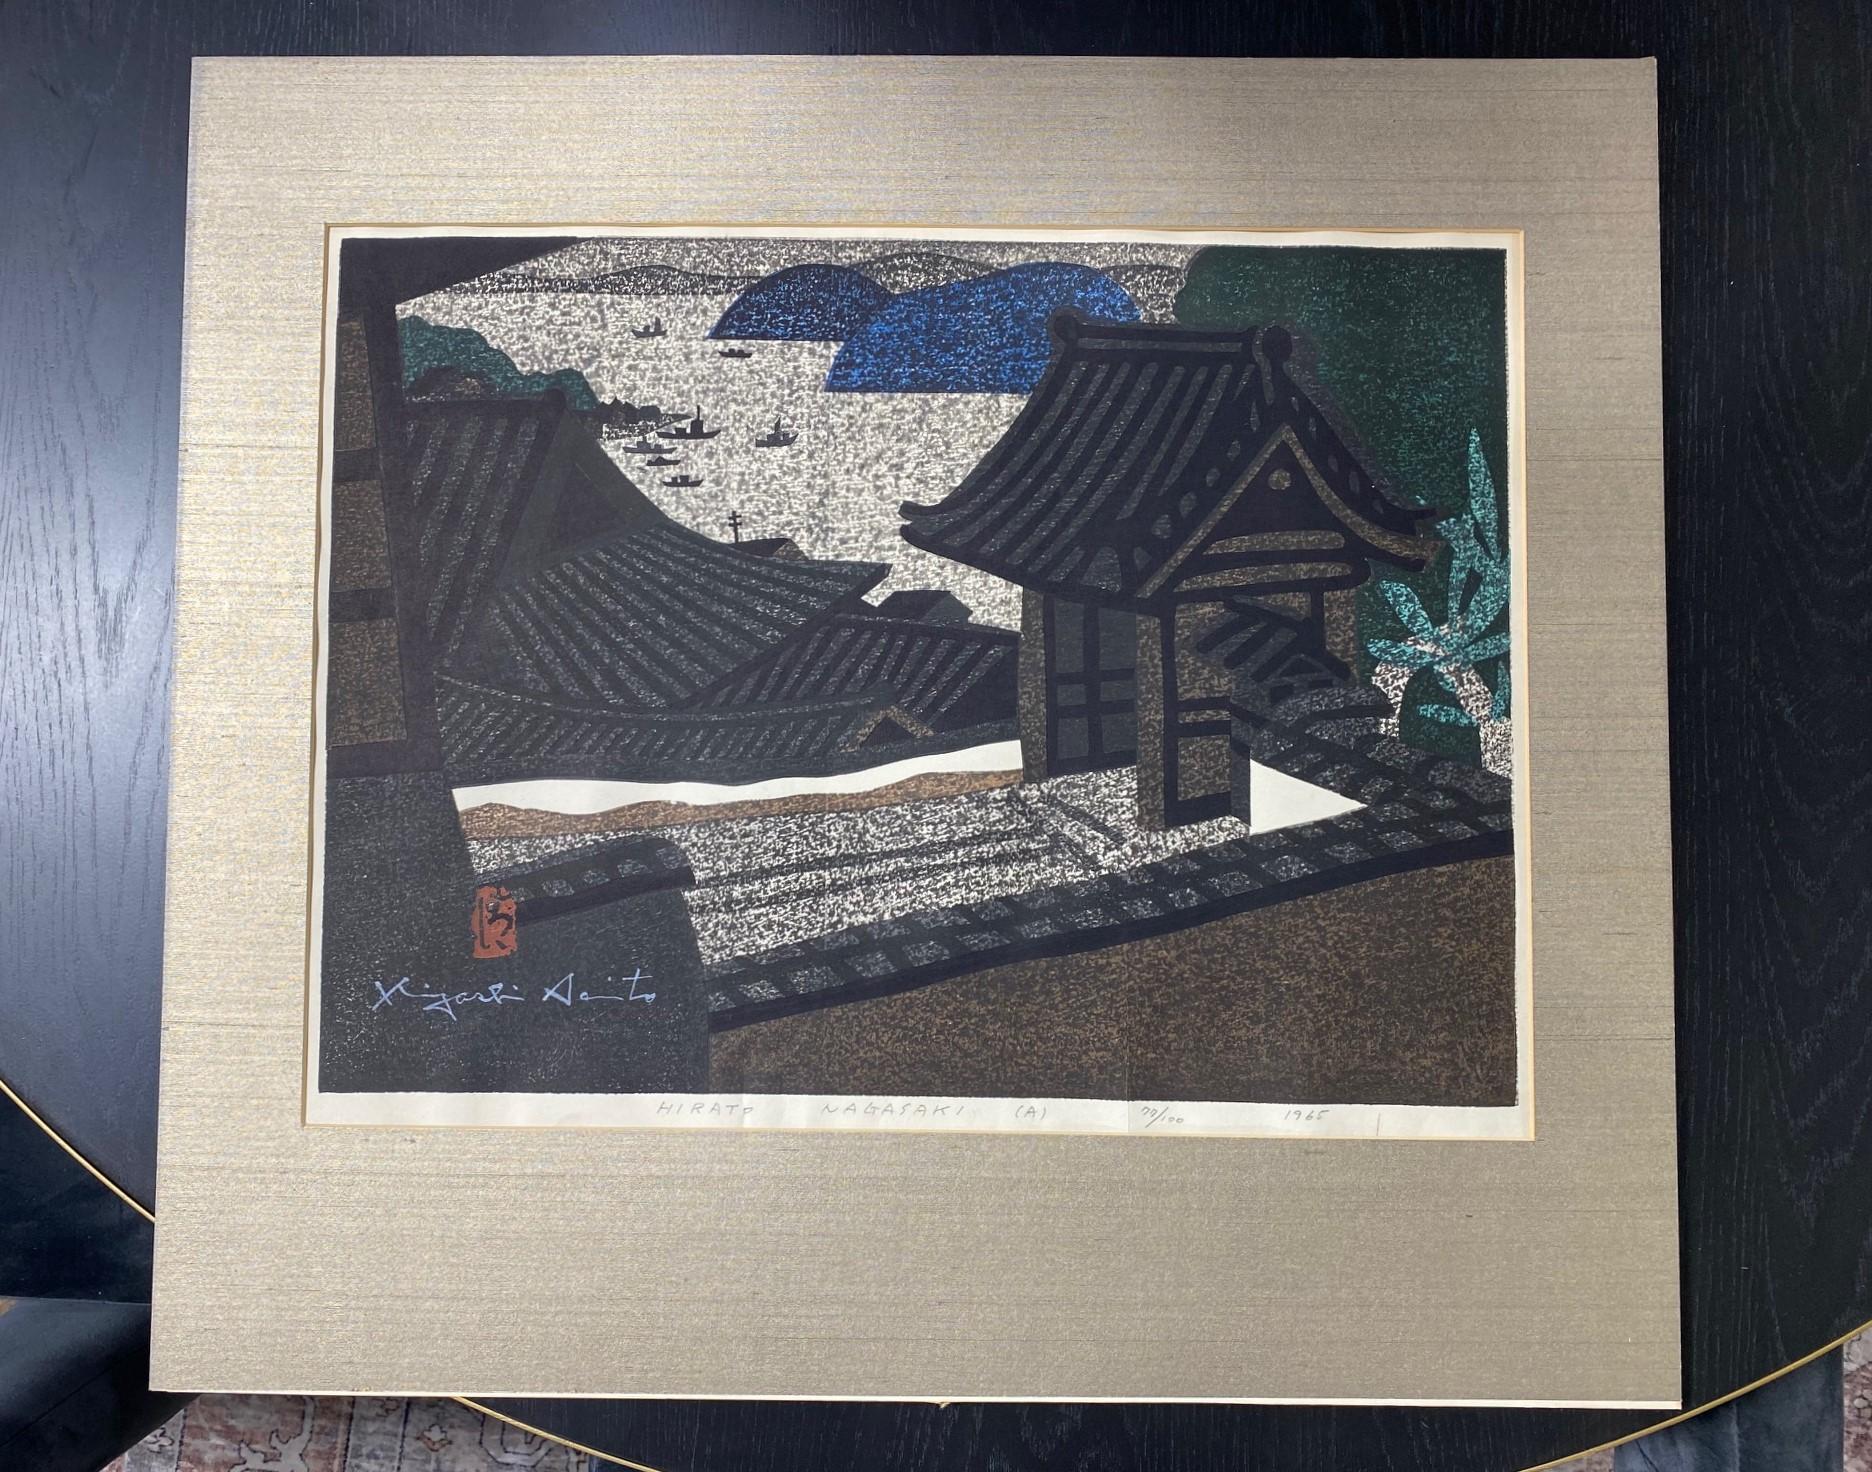 Une superbe gravure sur bois réalisée par le célèbre graveur japonais Sosaku Hanga, Kiyoshi Saito. Nombreux sont ceux qui considèrent Saito comme l'un des plus importants, sinon le plus important, des graveurs japonais contemporains du XXe siècle.